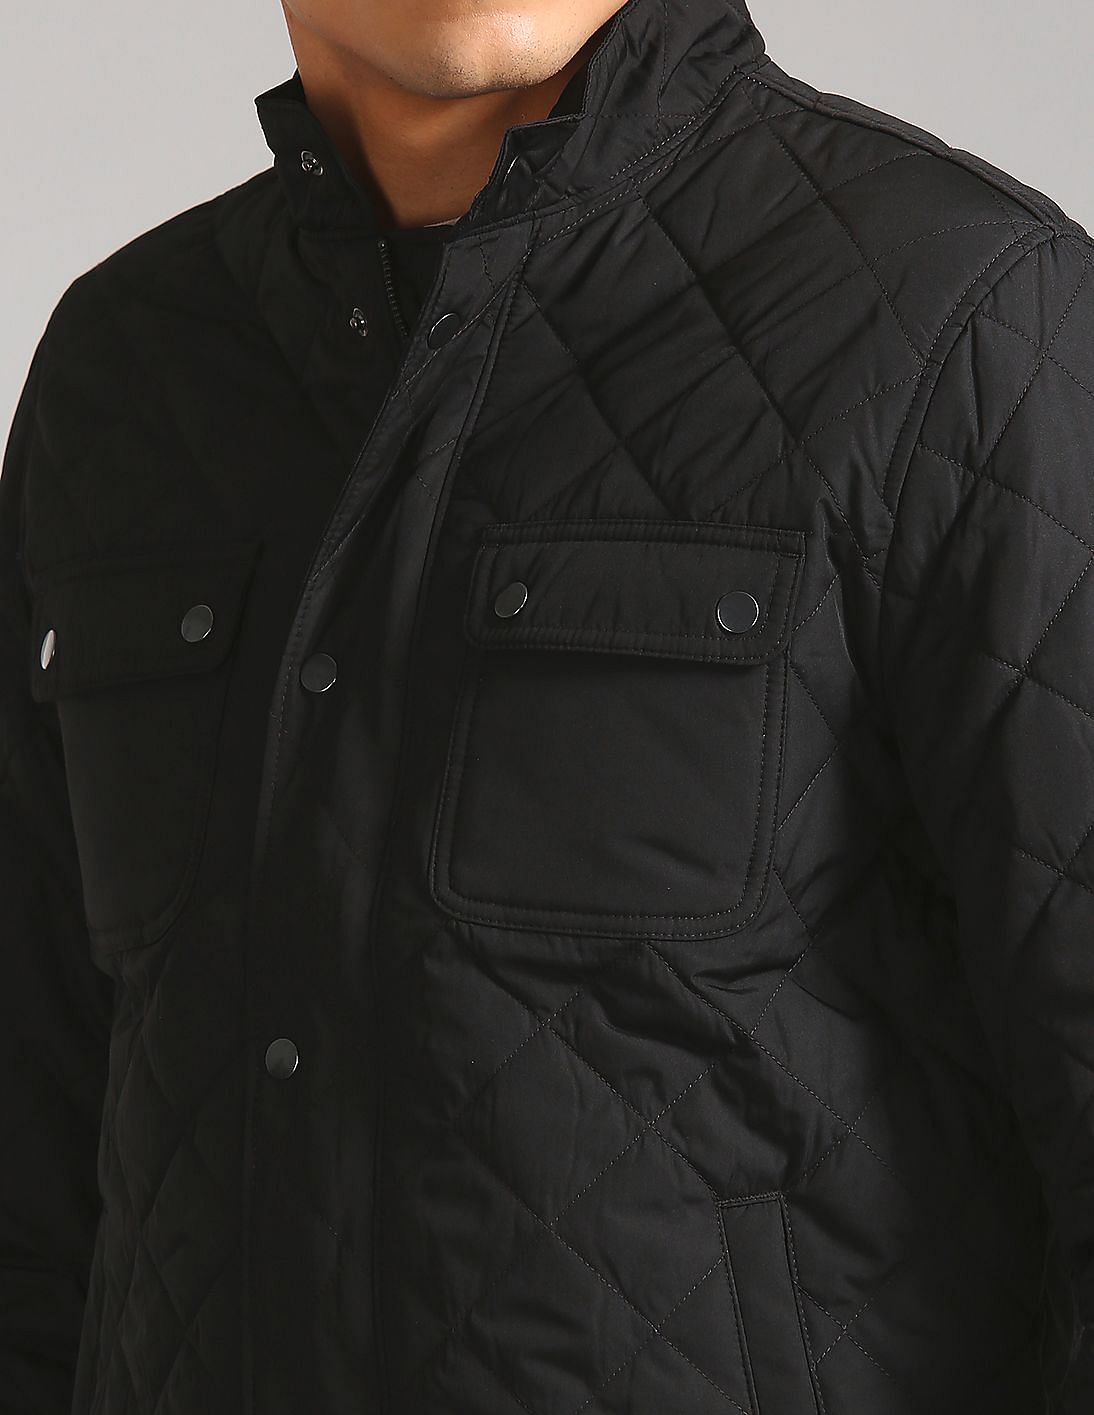 Gap Men’s Jacket RN 54023 Size:M, button up, UNISEX